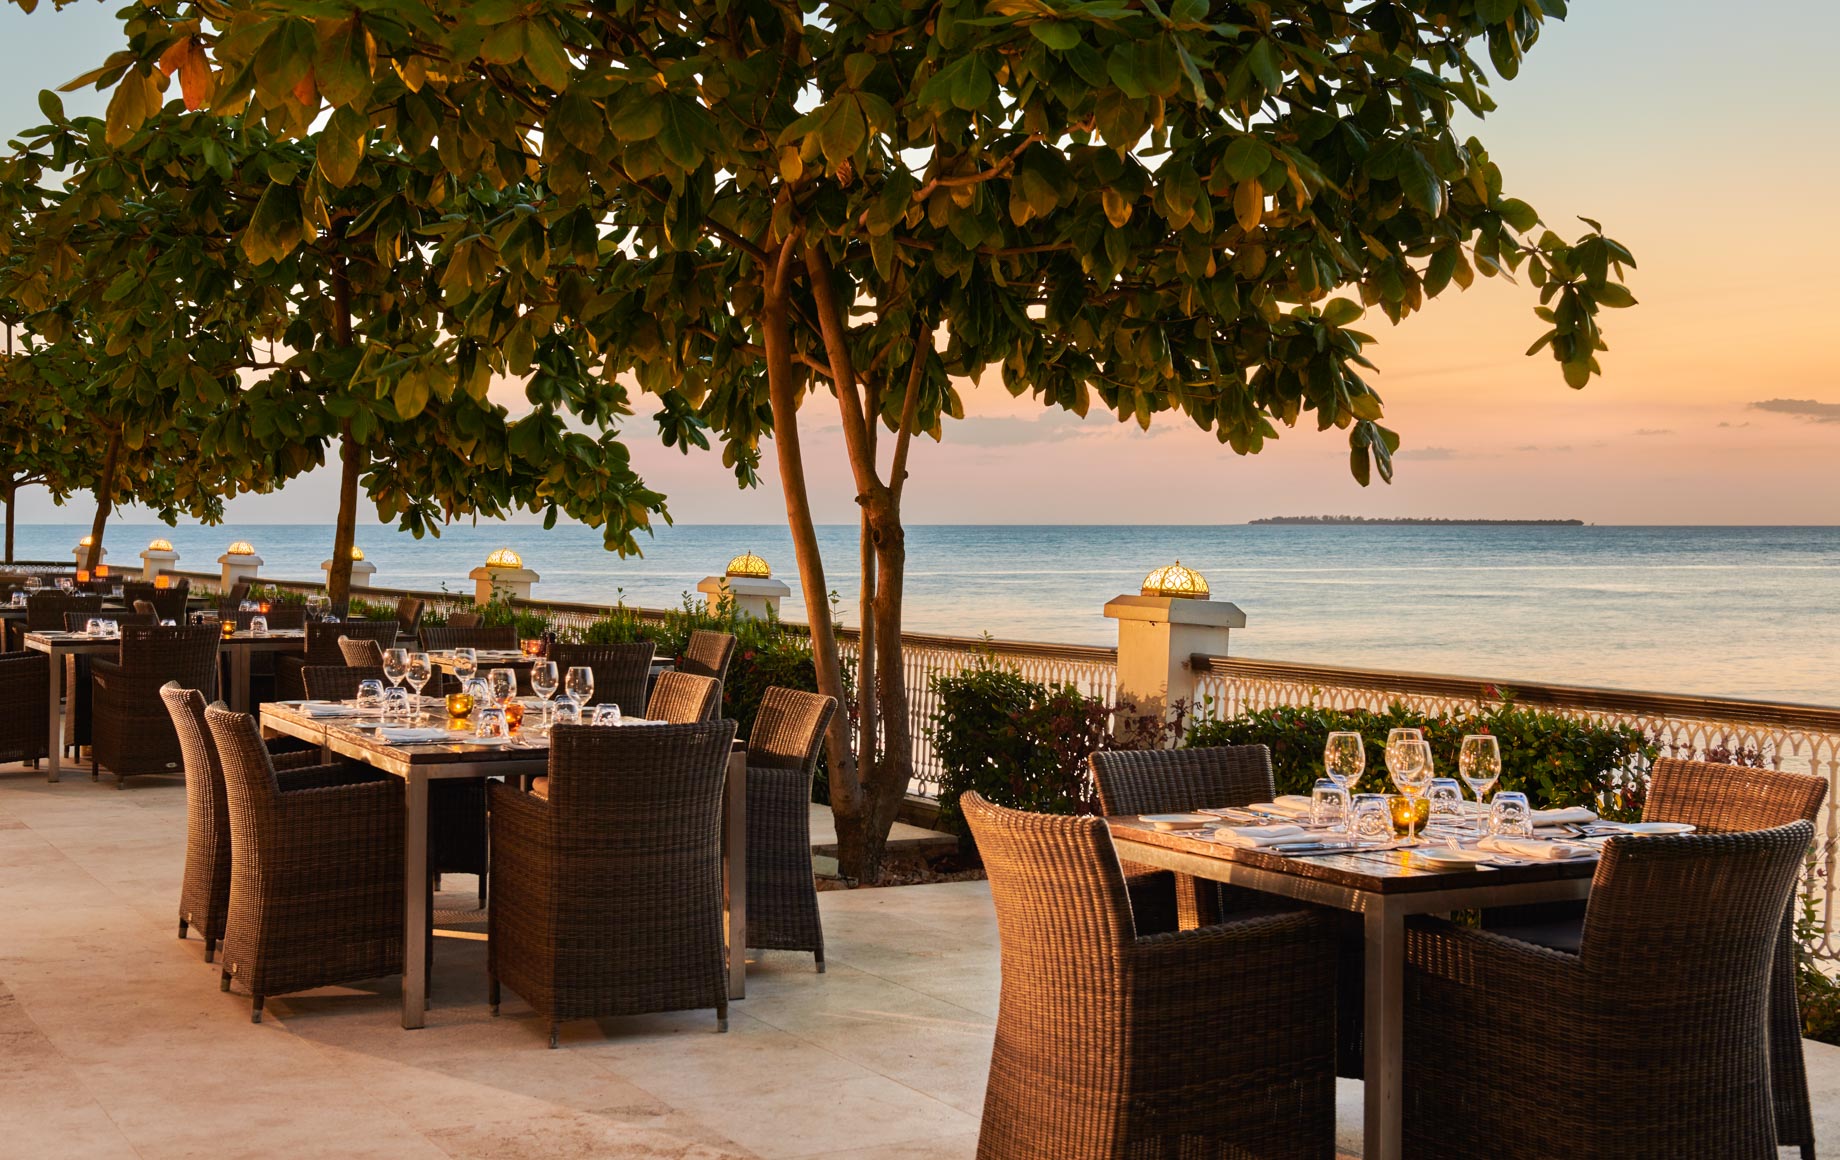 Outdoor deck dining area at Park Hyatt, Zanzibar